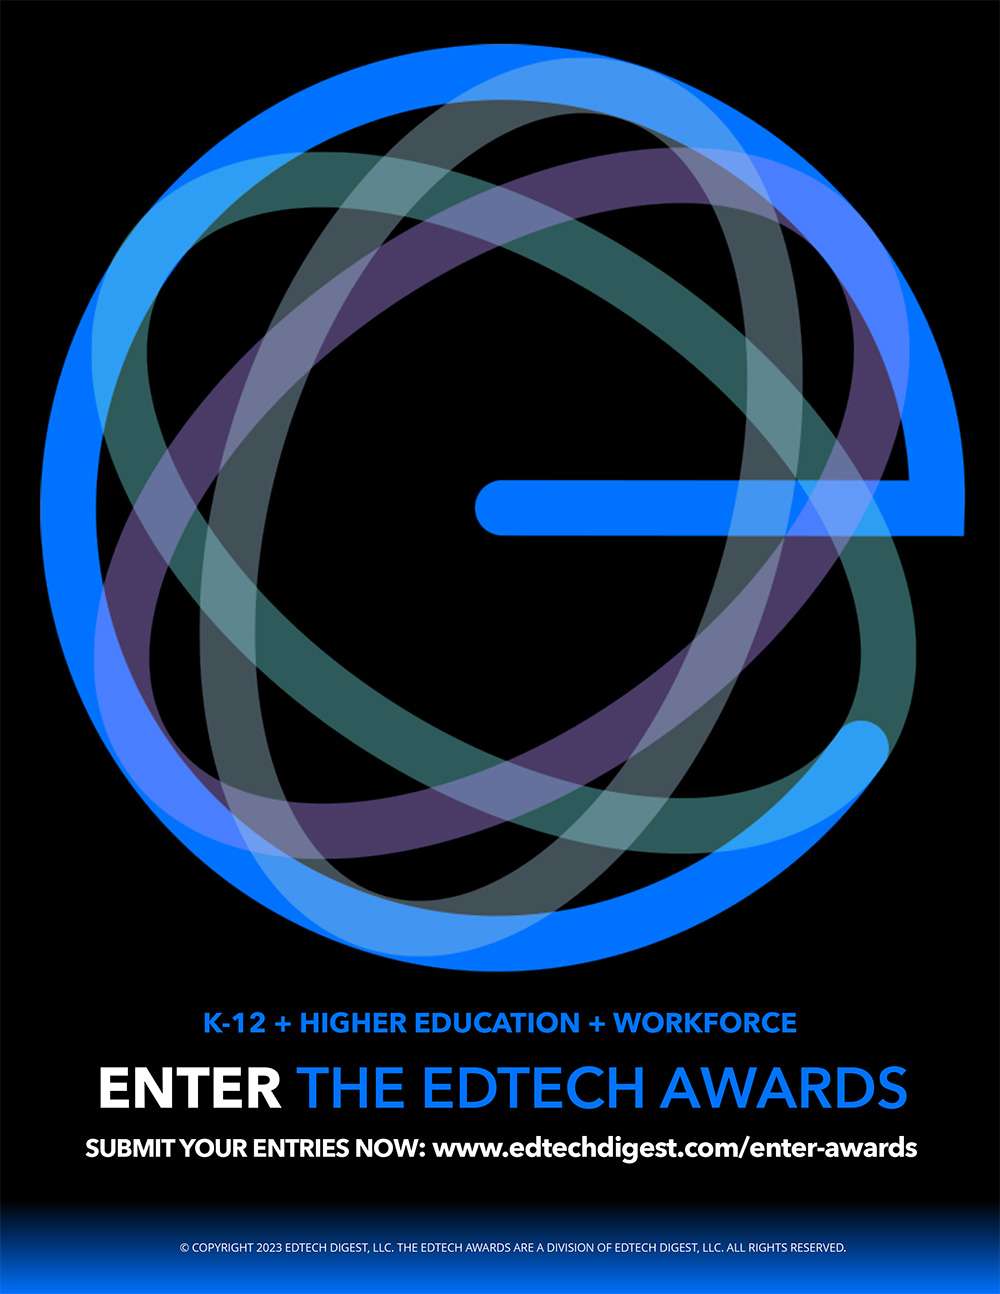 EdTech Awards Advertisement